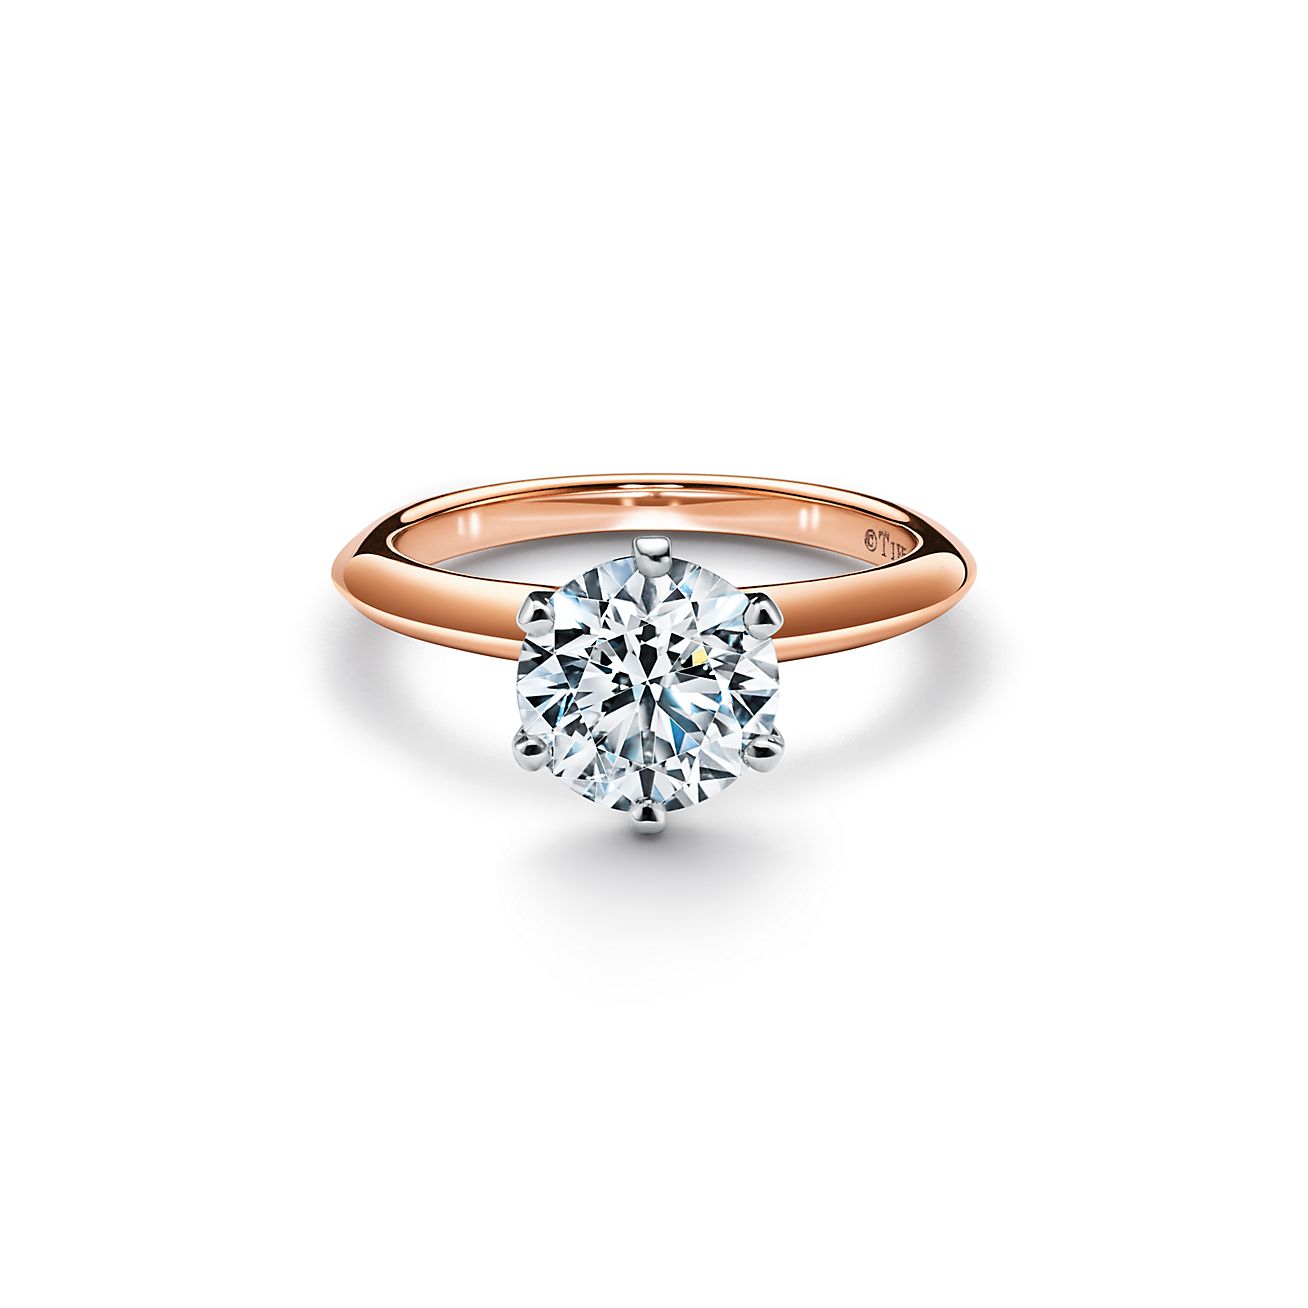 El anillo de compromiso Tiffany Setting en oro rosa de 18 quilates